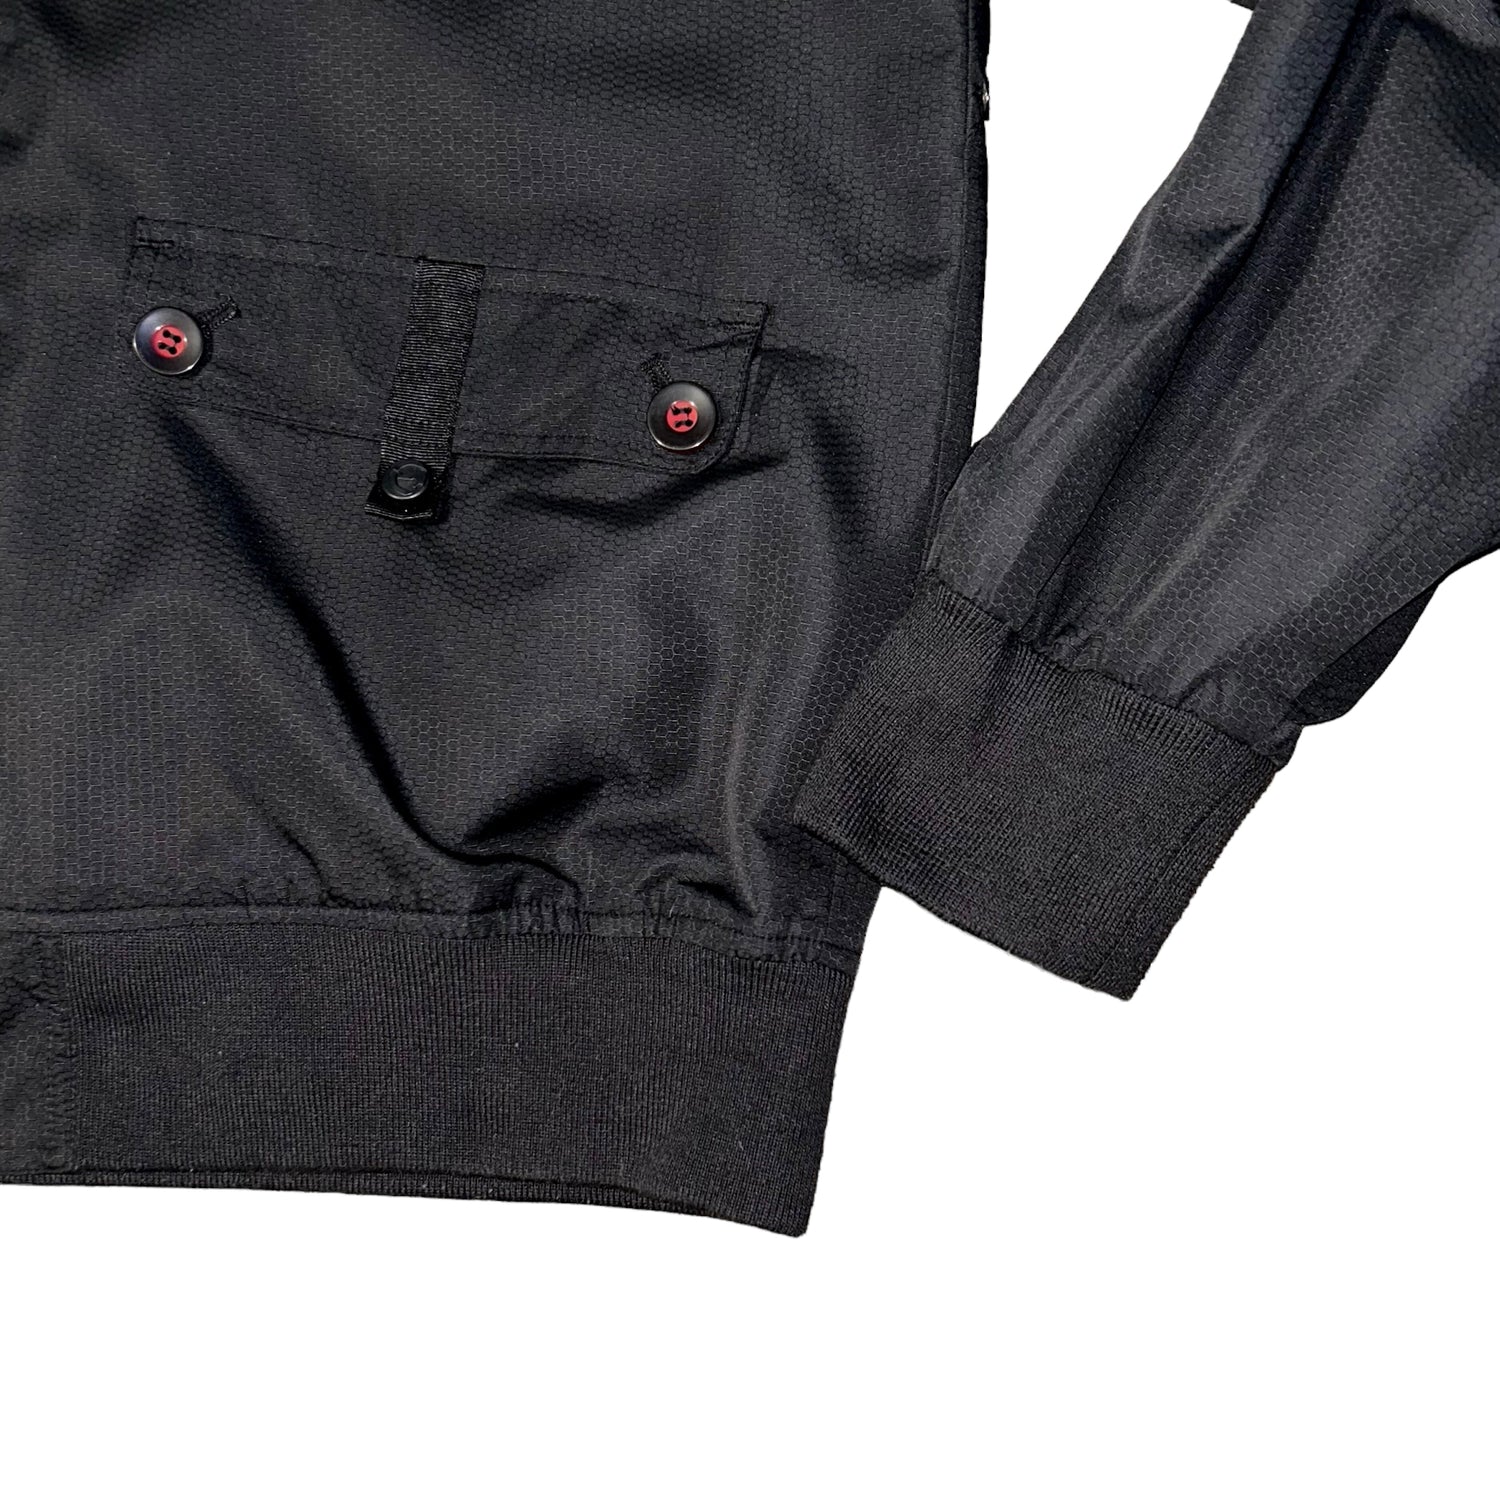 Ecko Unlimited Jacket (XL)